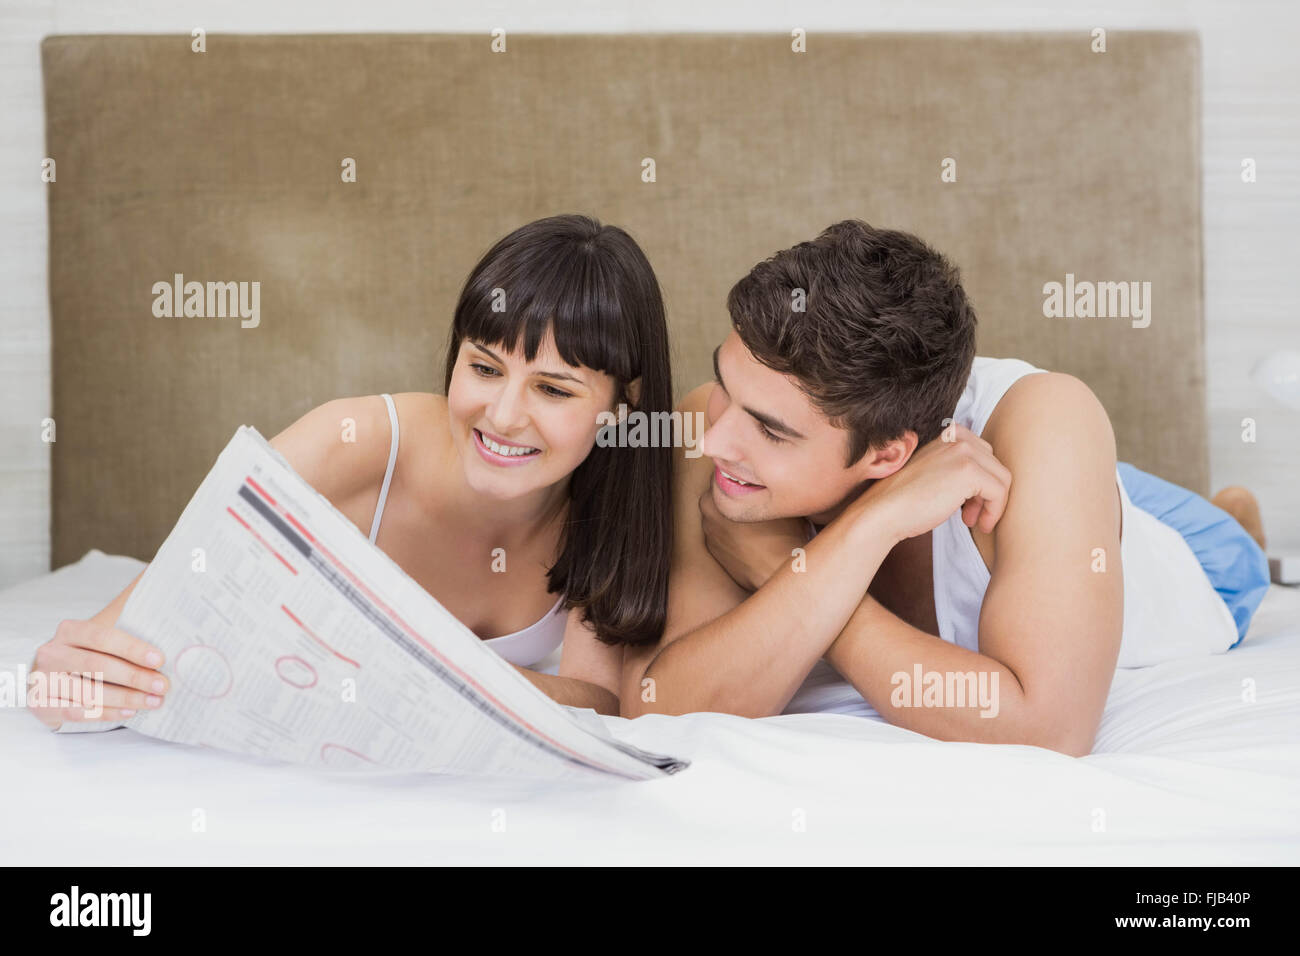 Paar lesen Zeitung auf Bett Stockfoto